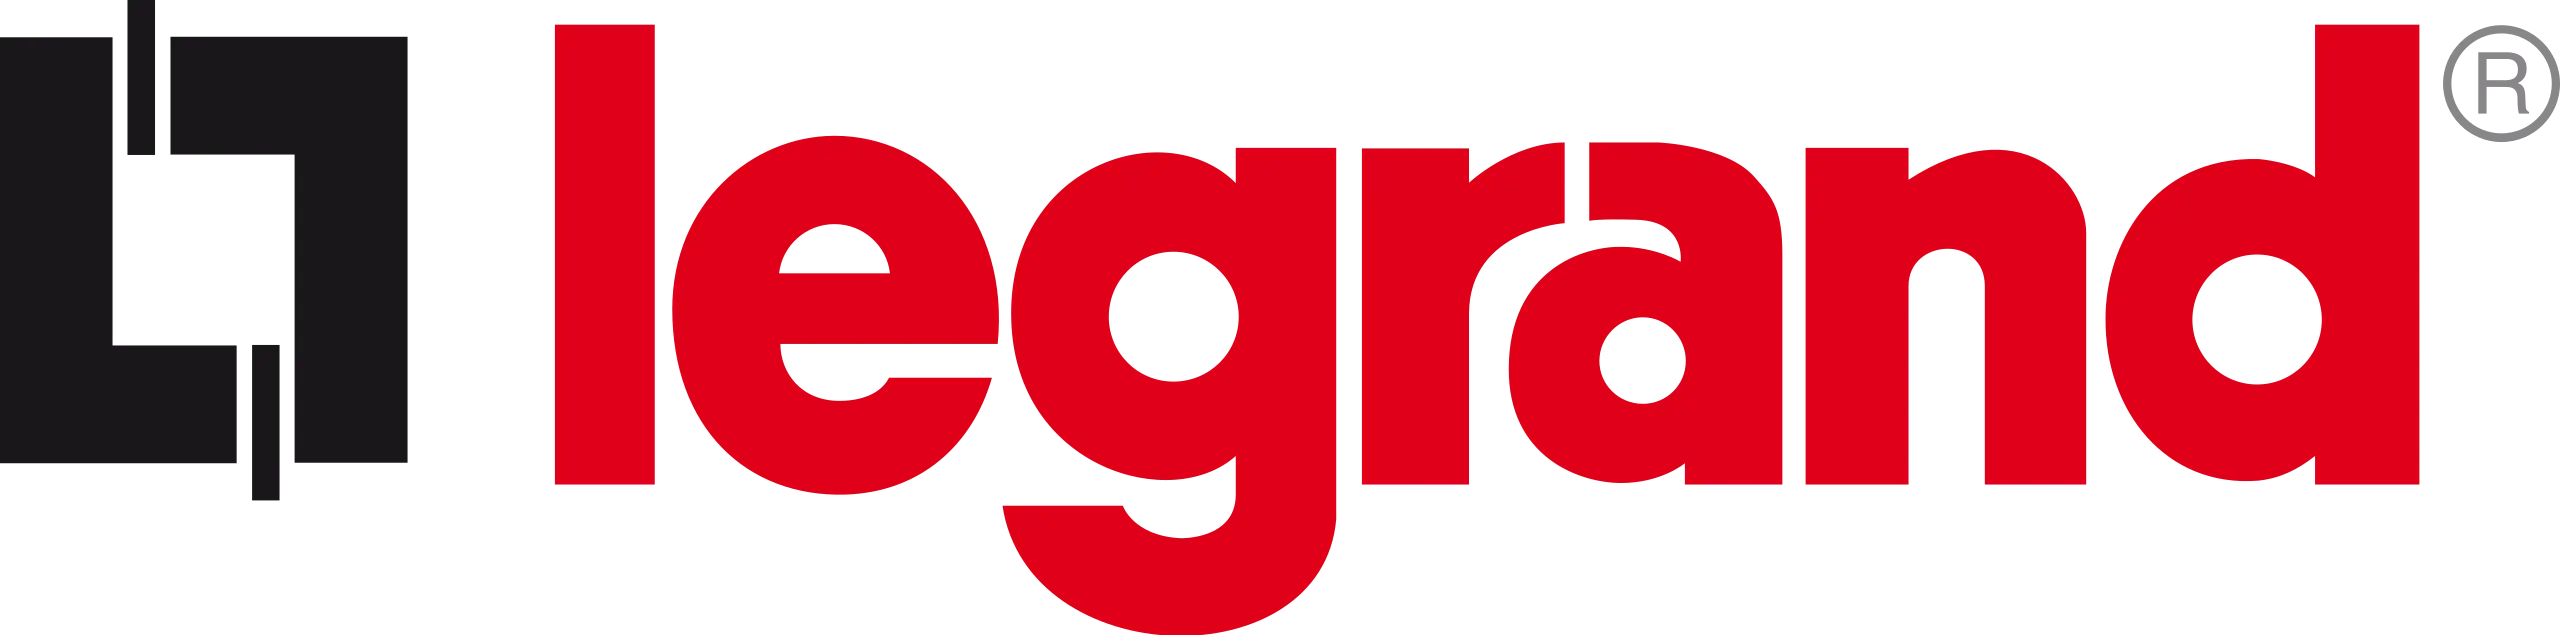 Magento SSO | Magento 2 Single Sign-On | Legrand logo